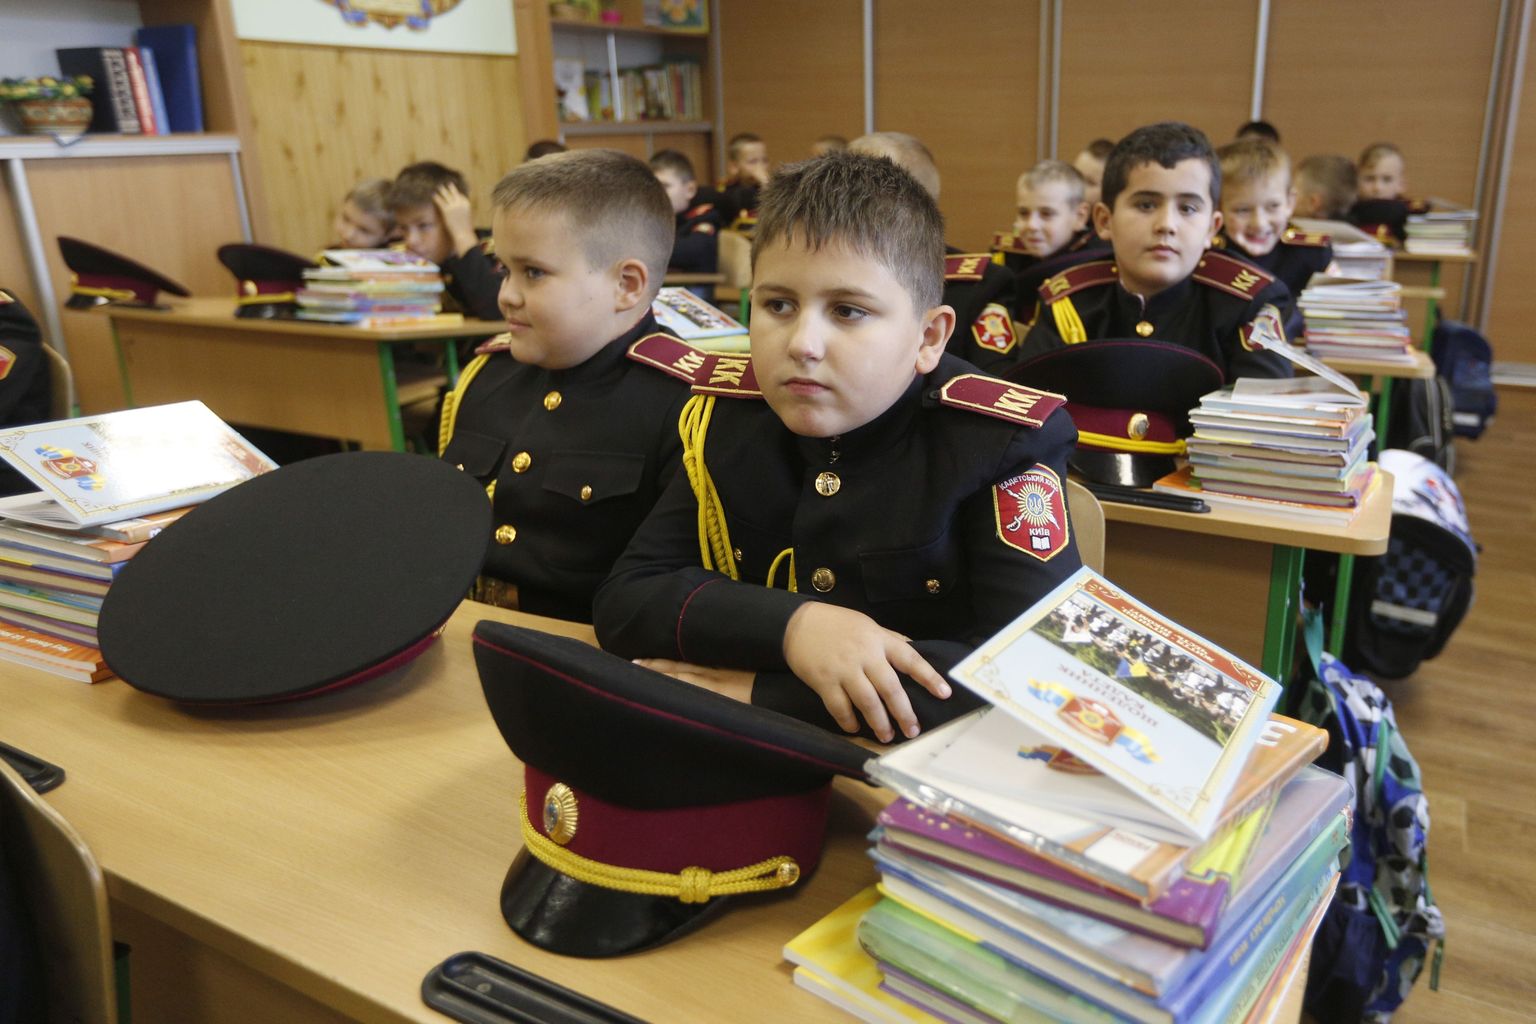 Noored Kiievi kadetilütseumi õpilased esimesel koolipäeval.